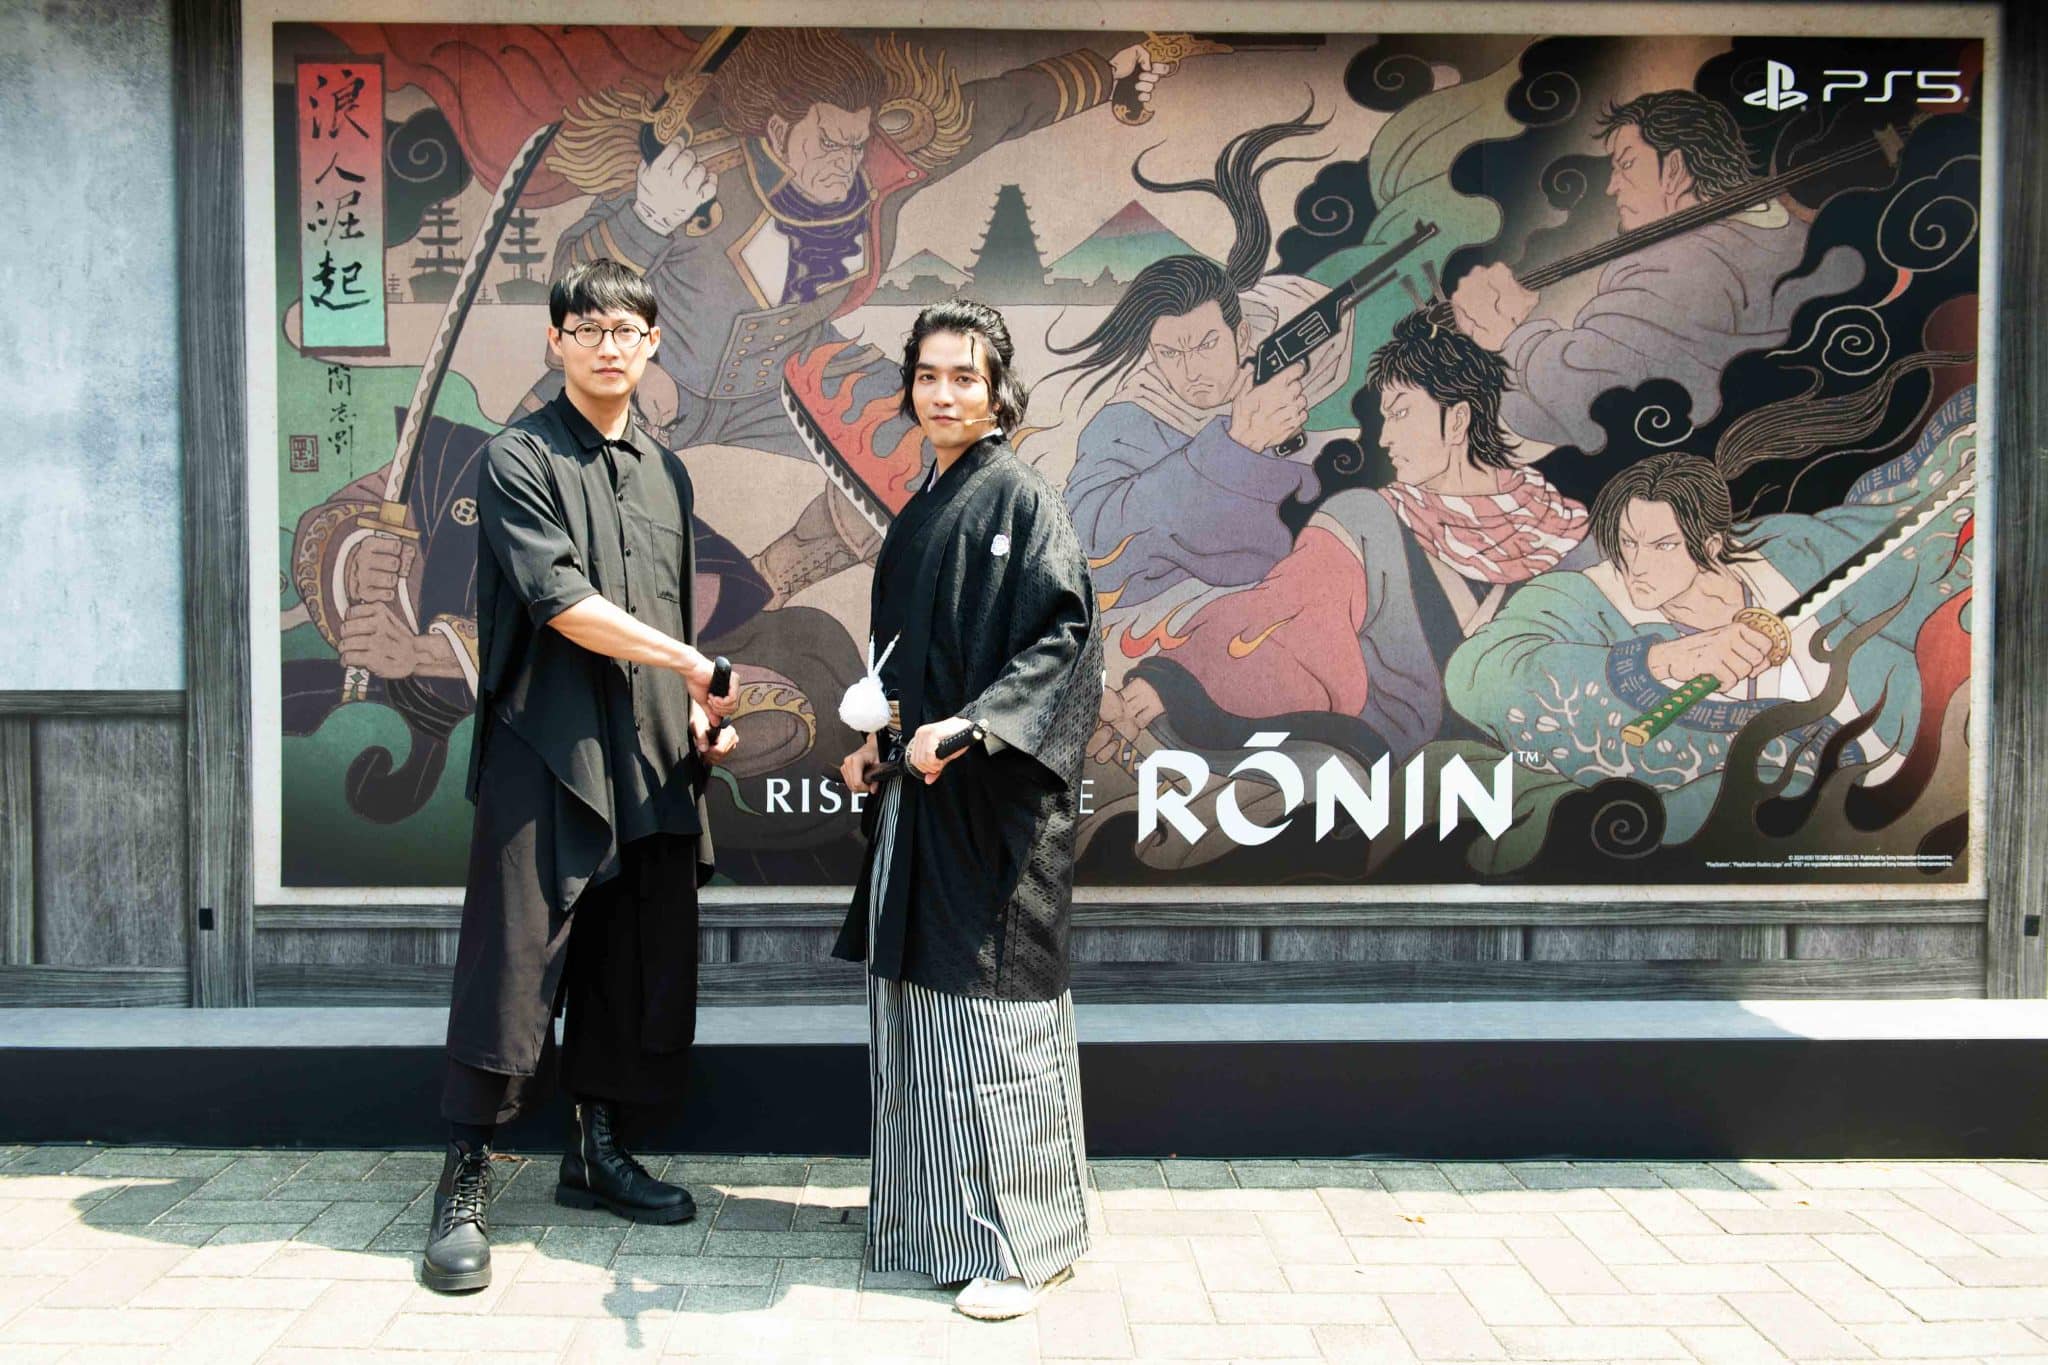 圖片二藝術創作家簡志剛與知名創作者RJ-張廉傑一同為《浪人崛起》上市慶祝活動揭幕